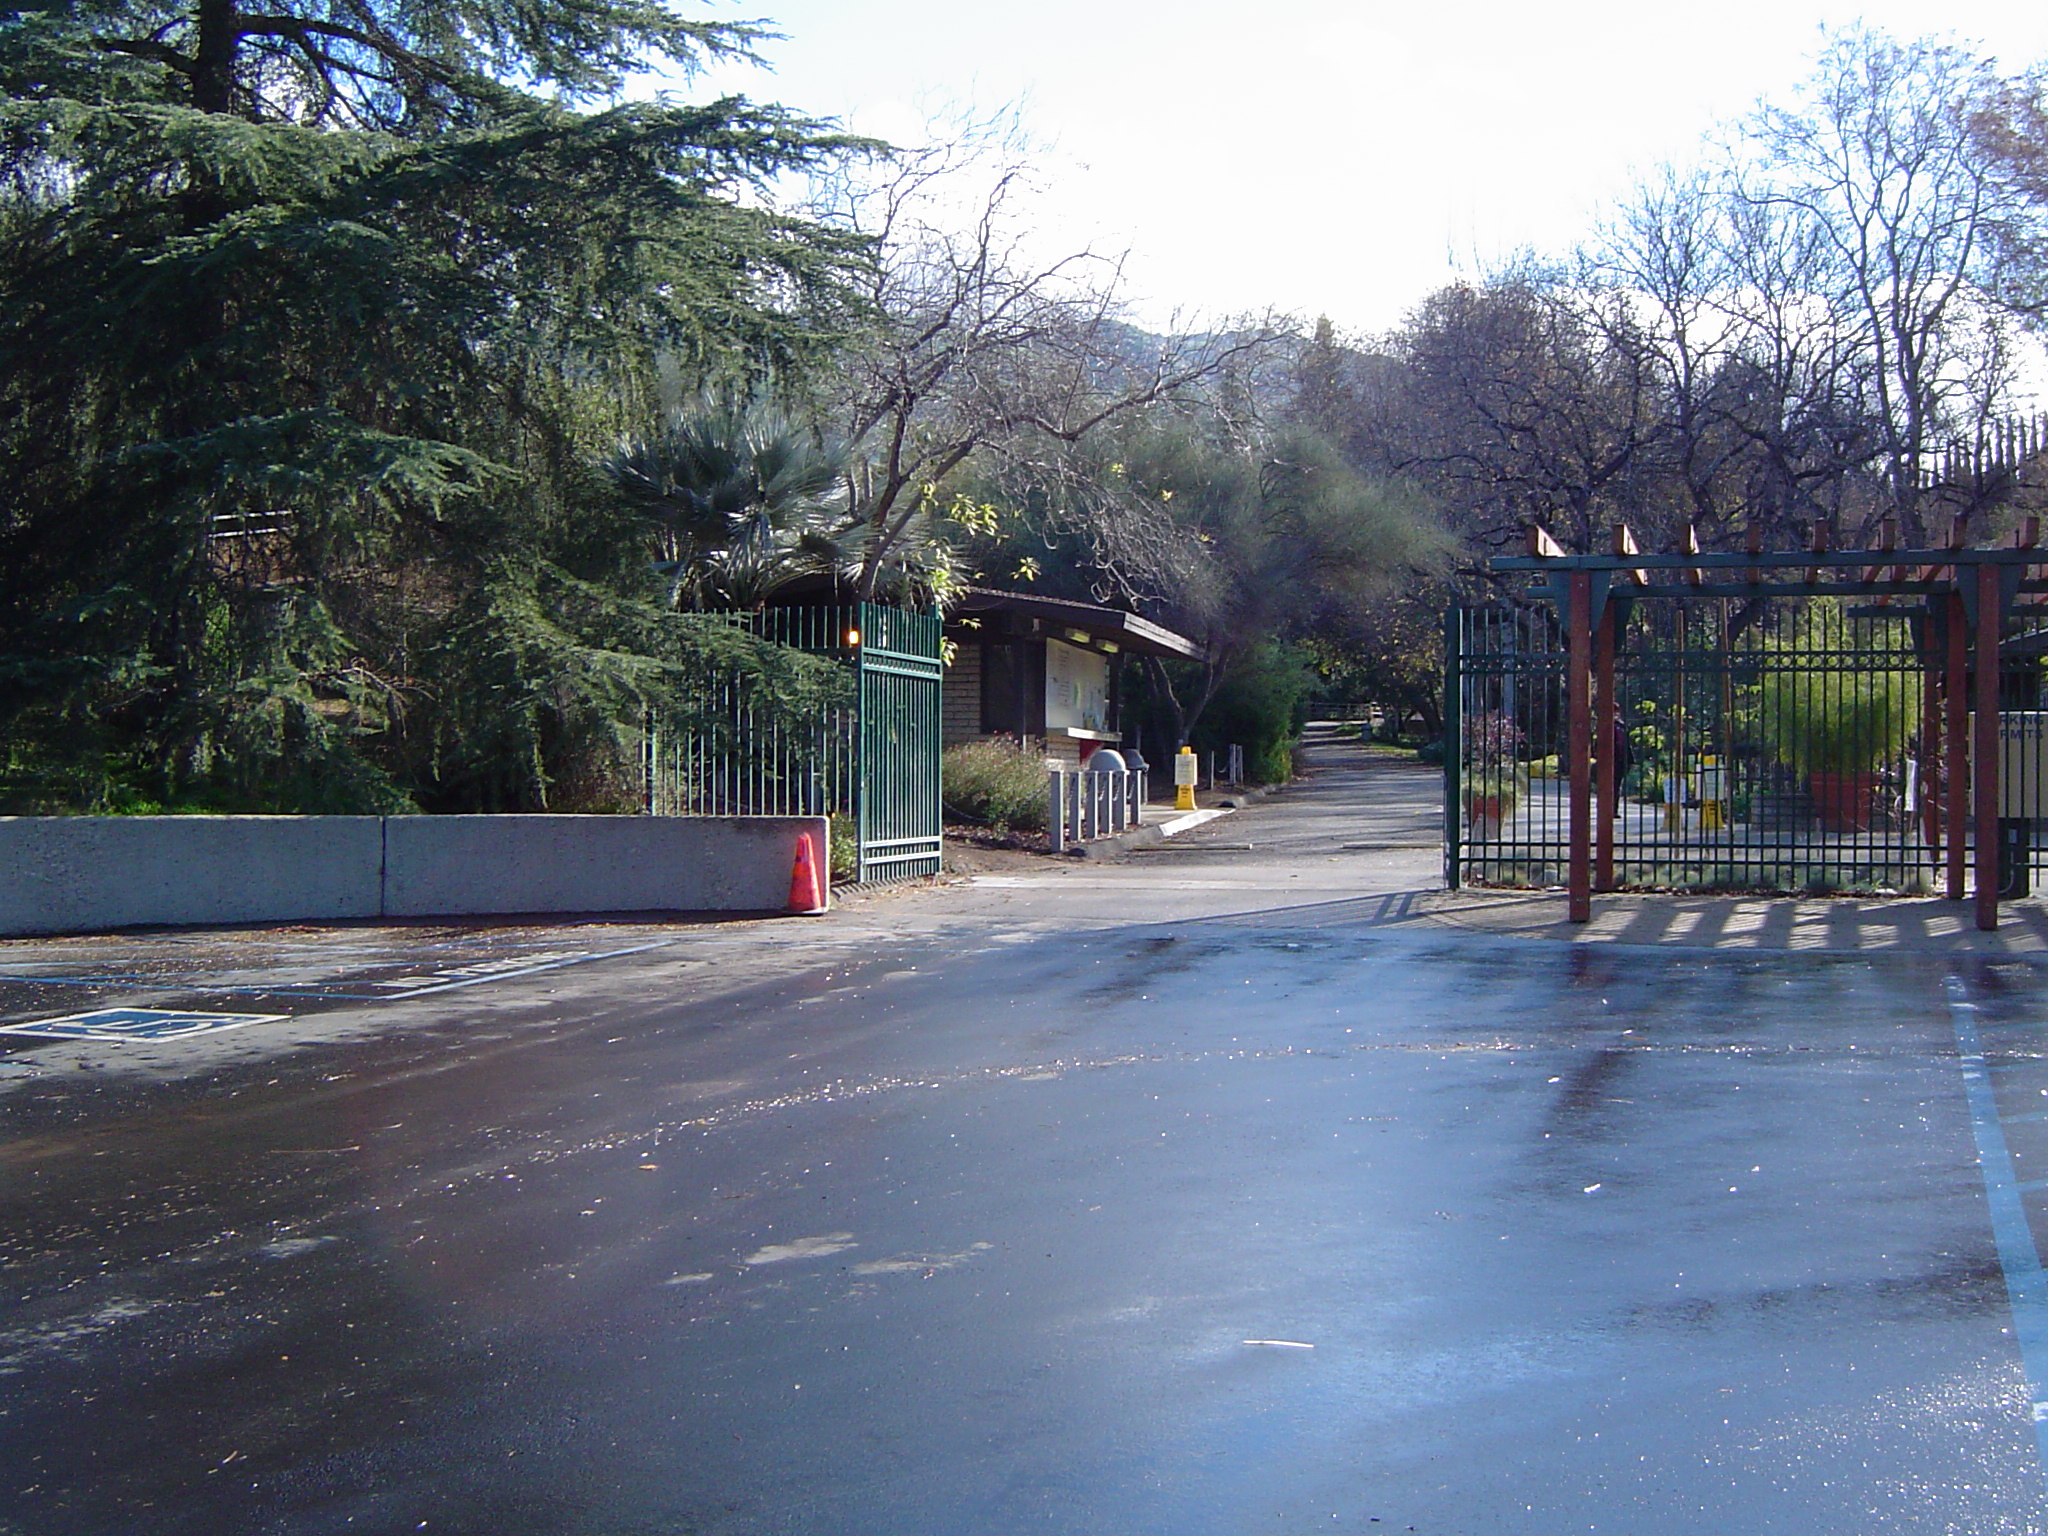 Entrance to Japanese Garden